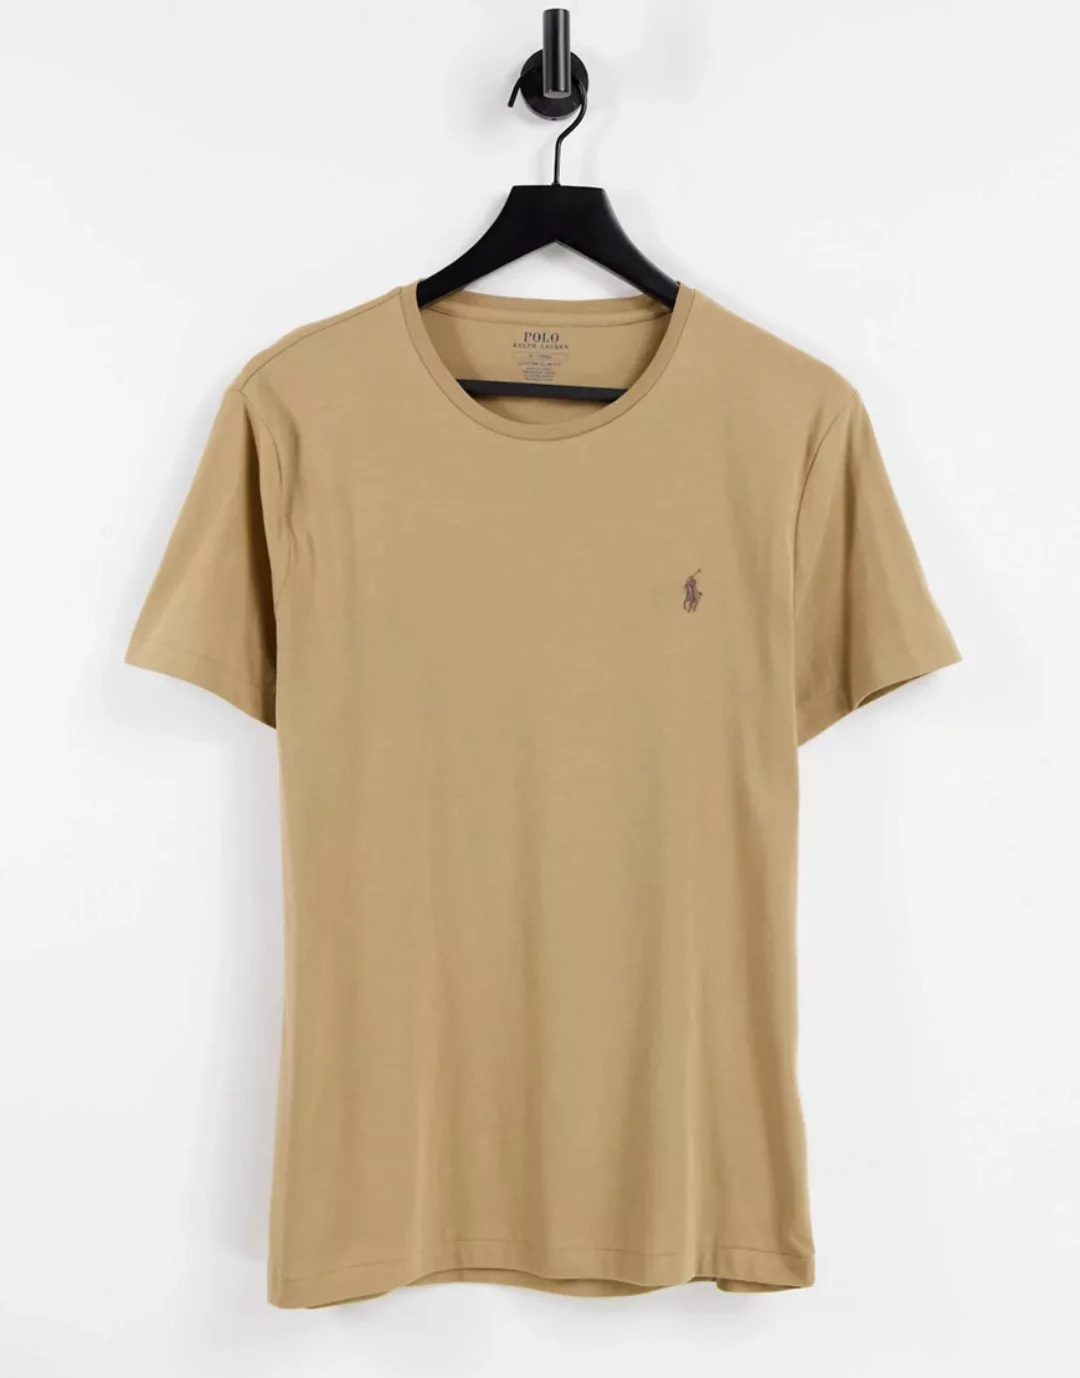 Polo Ralph Lauren – T-Shirt mit Polospieler-Logo in Luxus-Hellbraun günstig online kaufen